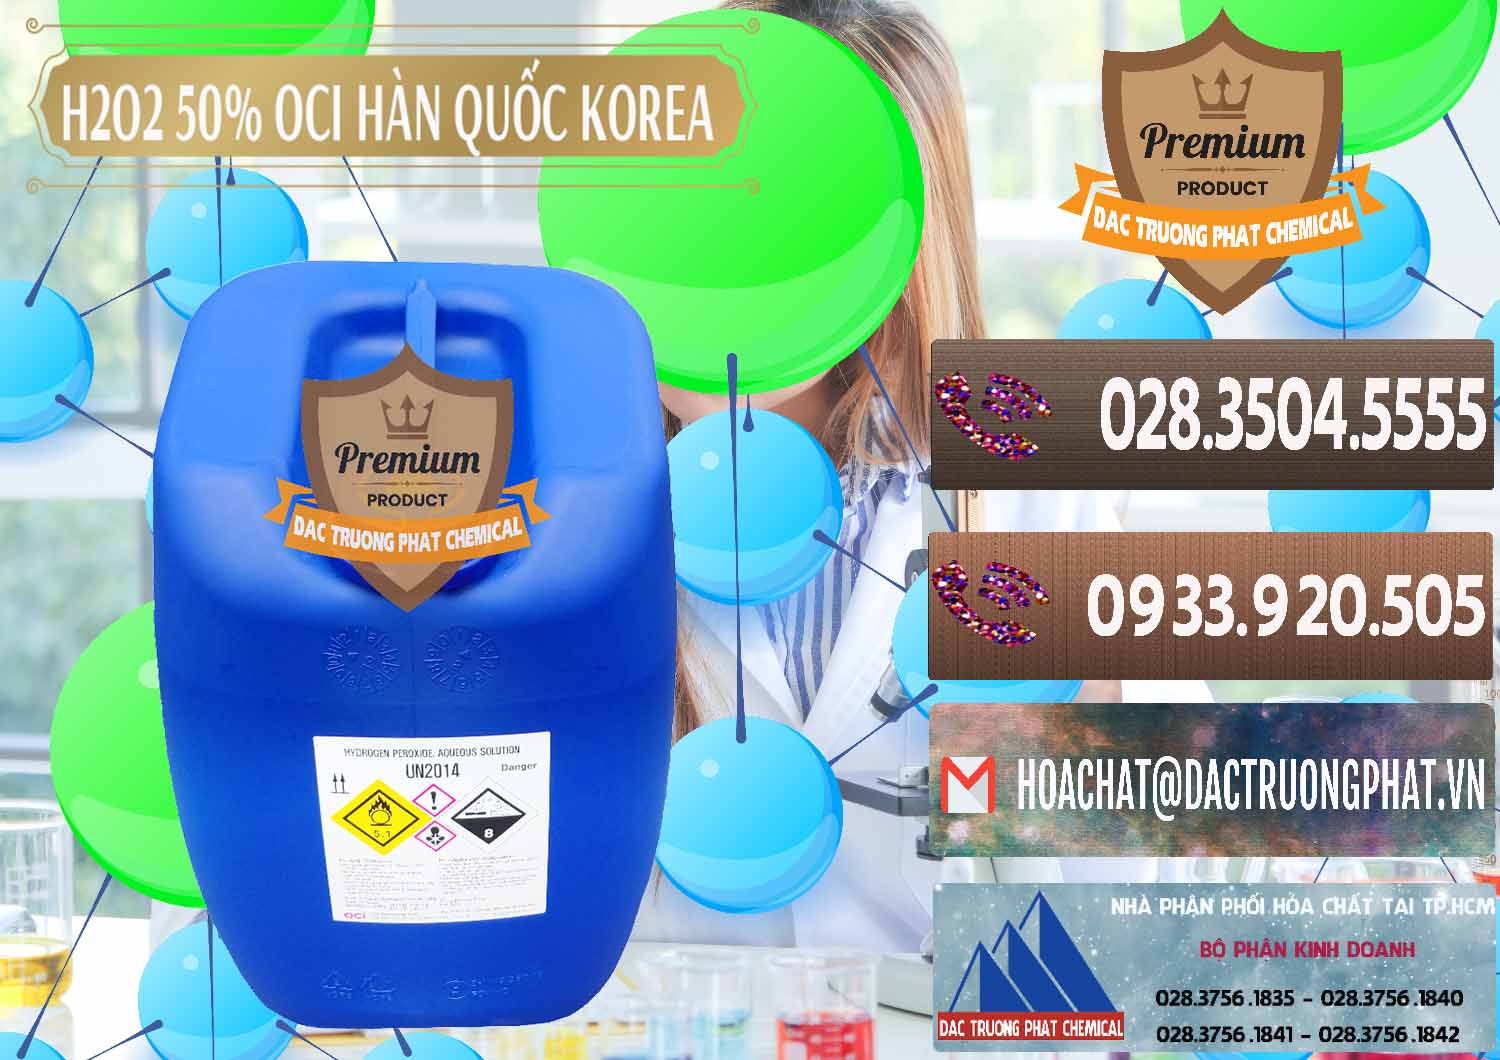 Cty bán & phân phối H2O2 - Hydrogen Peroxide 50% OCI Hàn Quốc Korea - 0075 - Chuyên cung cấp ( phân phối ) hóa chất tại TP.HCM - hoachatviet.net